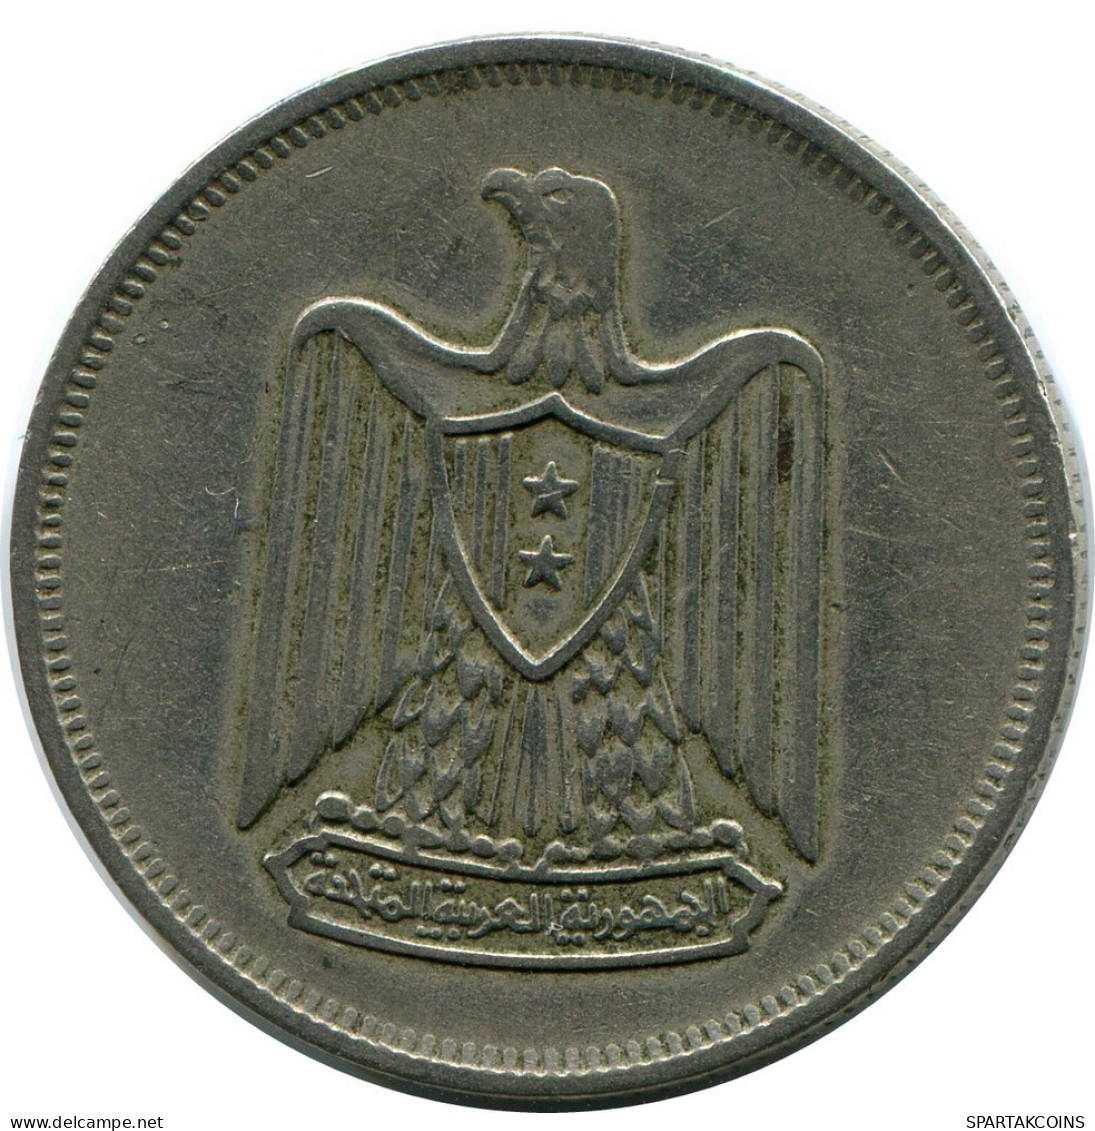 10 QIRSH 1967 EGYPT Islamic Coin #AP990.U.A - Egipto